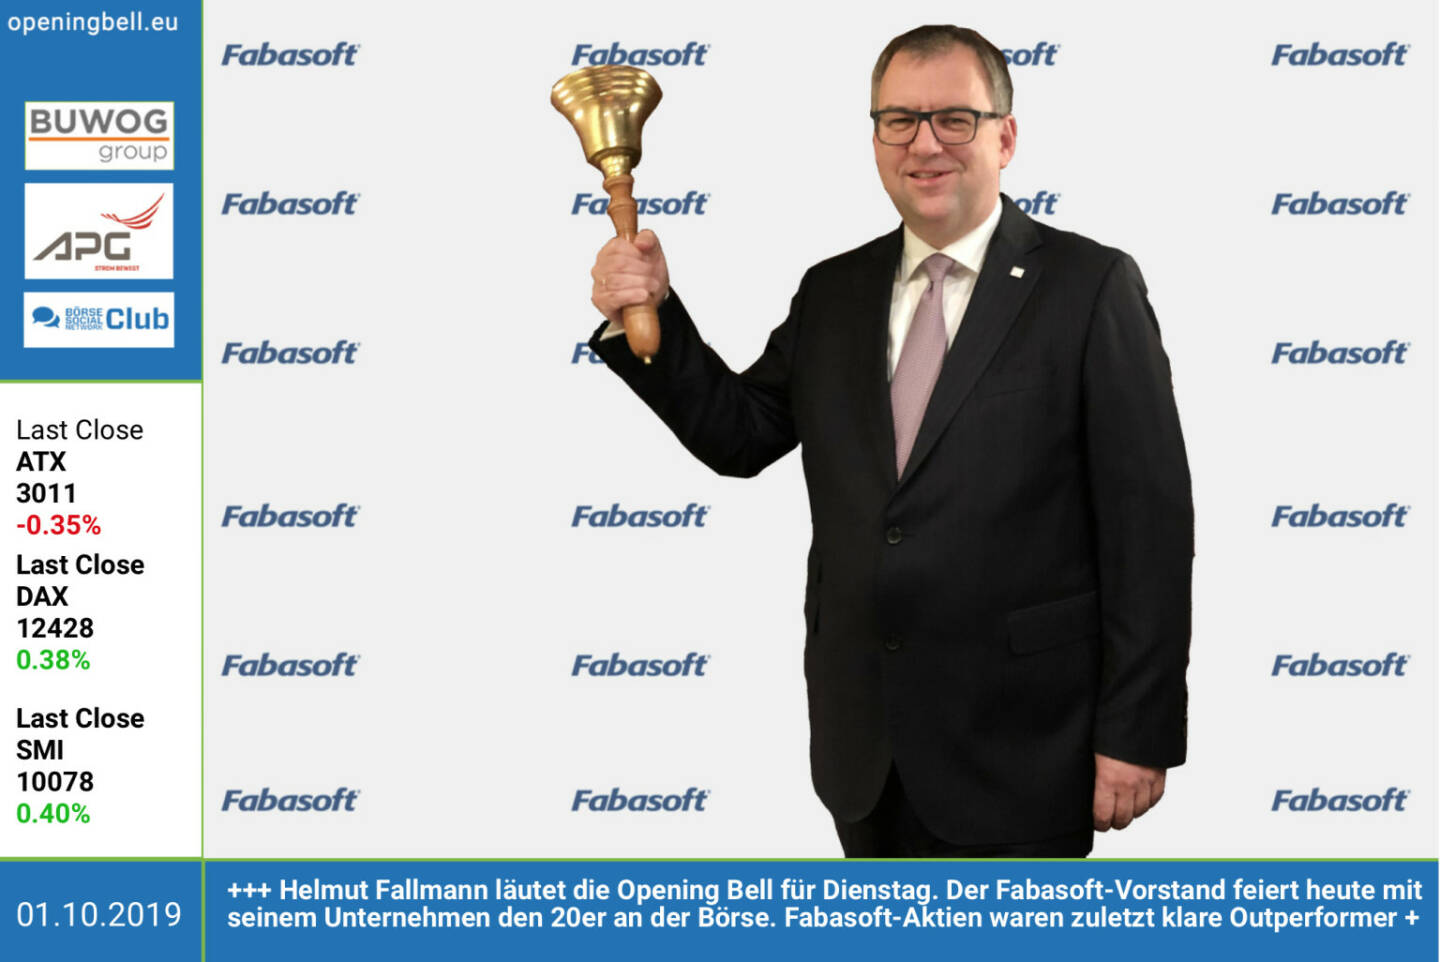 1.10.: Helmut Fallmann läutet die Opening Bell für Dienstag. Der Fabasoft-Vorstand feiert heute mit seinem Unternehmen den 20er an der Börse. Fabasoft-Aktien waren zuletzt über Jahre hindurch klare Outperformer. Alles Gute! http://www.fabasoft.com